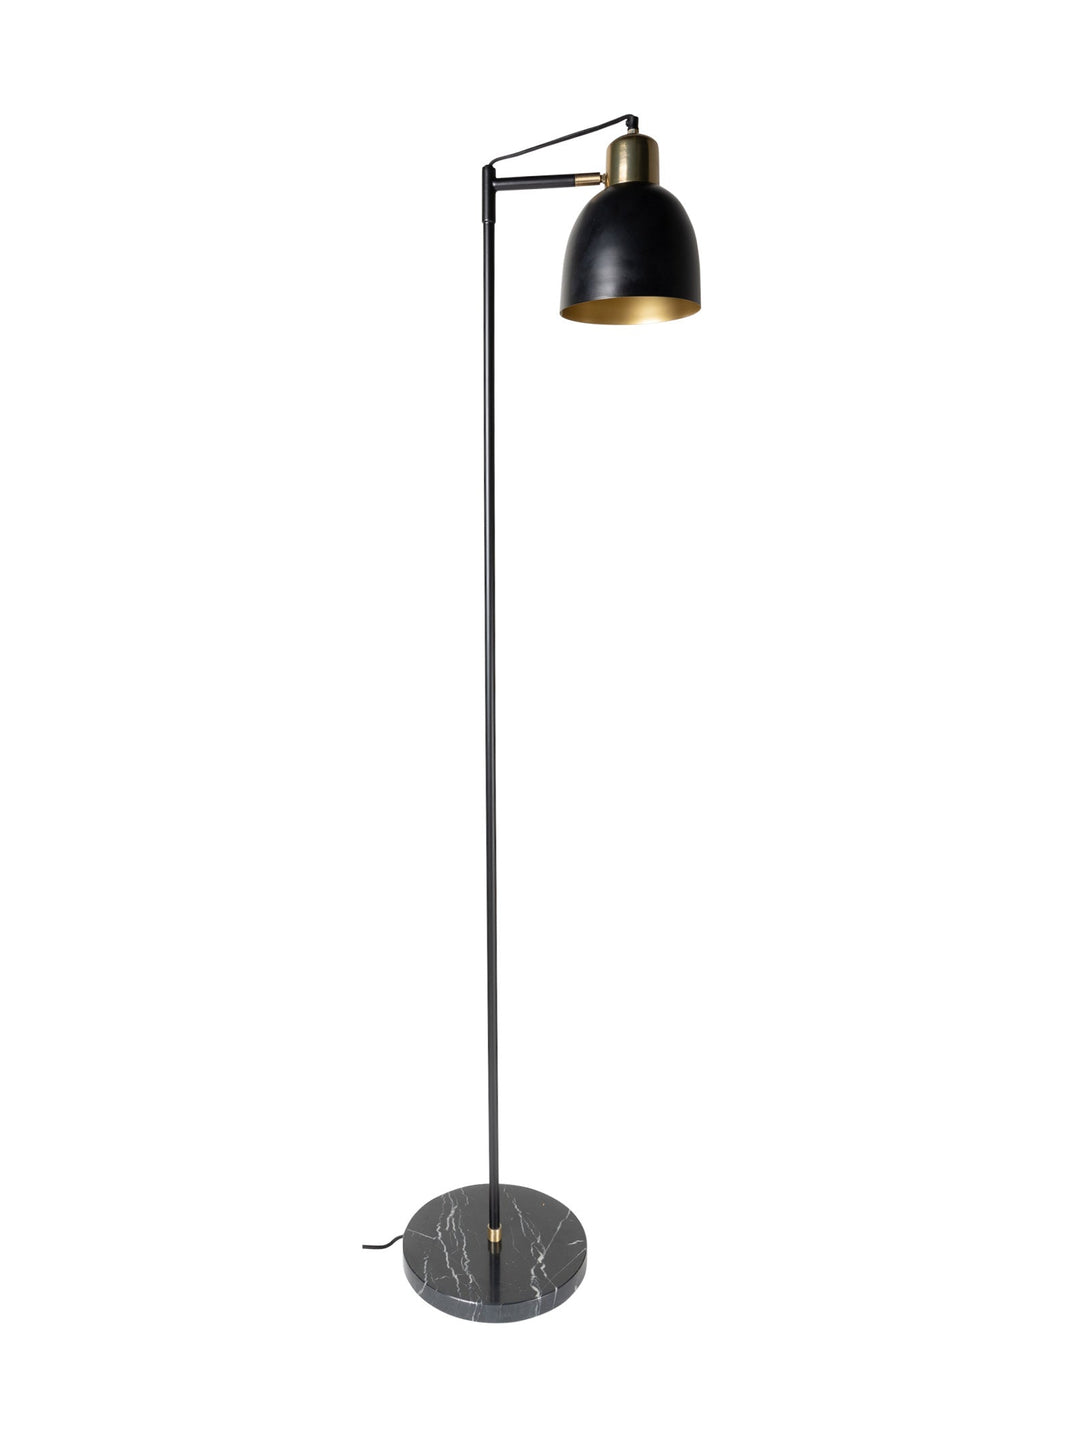 Seville Floor Lamp in Liquorice - lamp- Hertex Haus Online - Floor Lamps